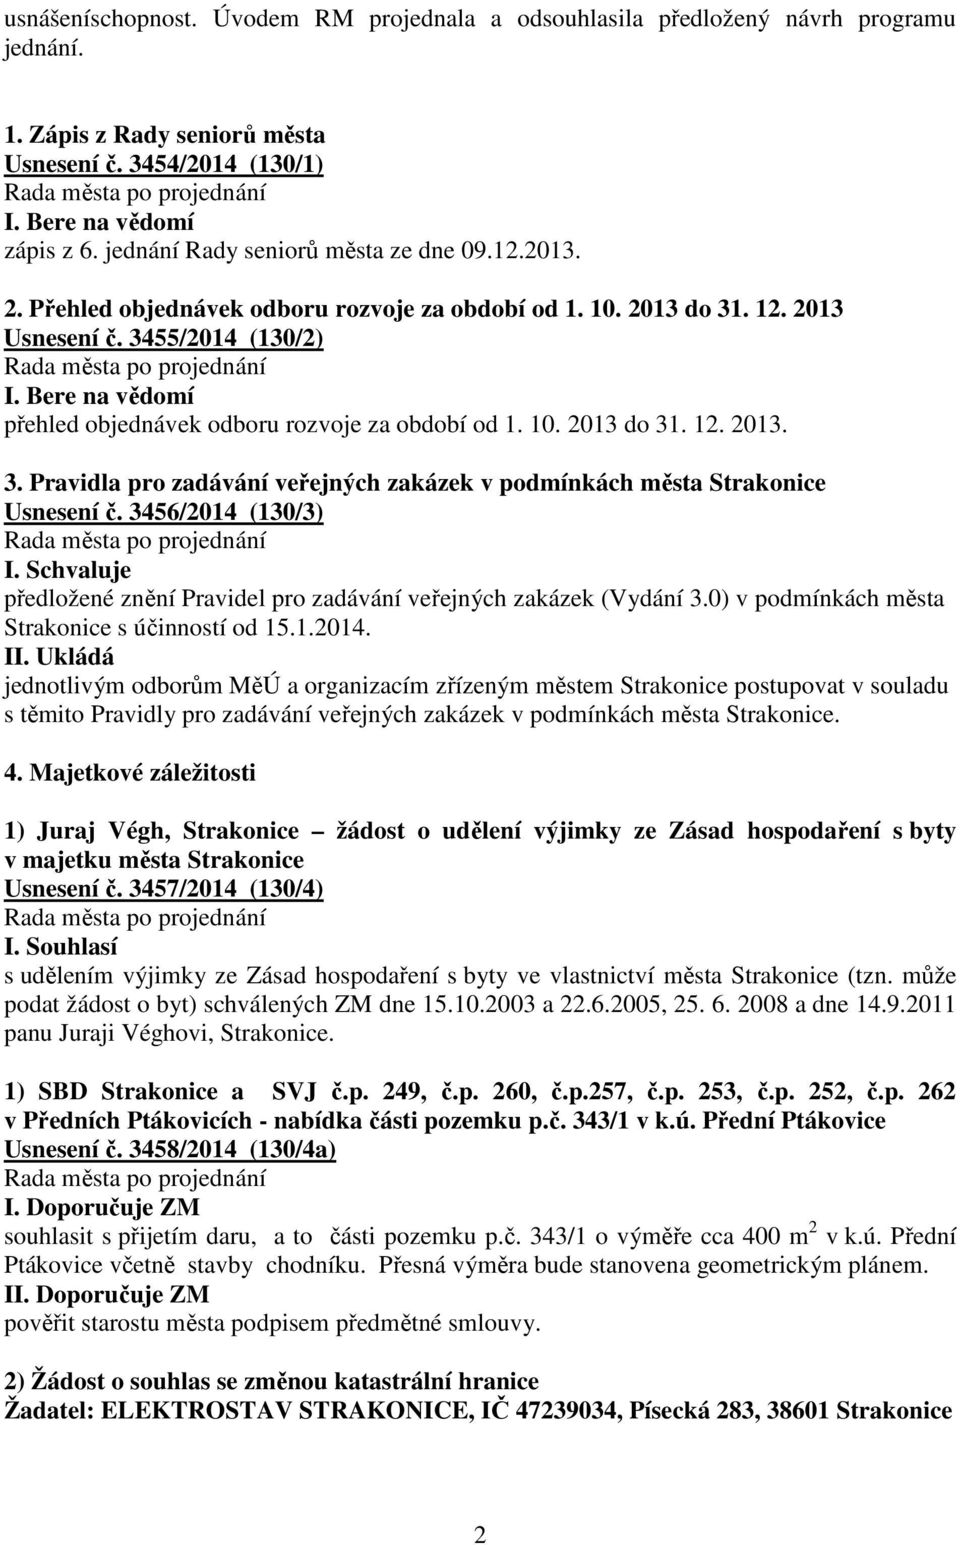 3456/2014 (130/3) I. Schvaluje předložené znění Pravidel pro zadávání veřejných zakázek (Vydání 3.0) v podmínkách města Strakonice s účinností od 15.1.2014. II.